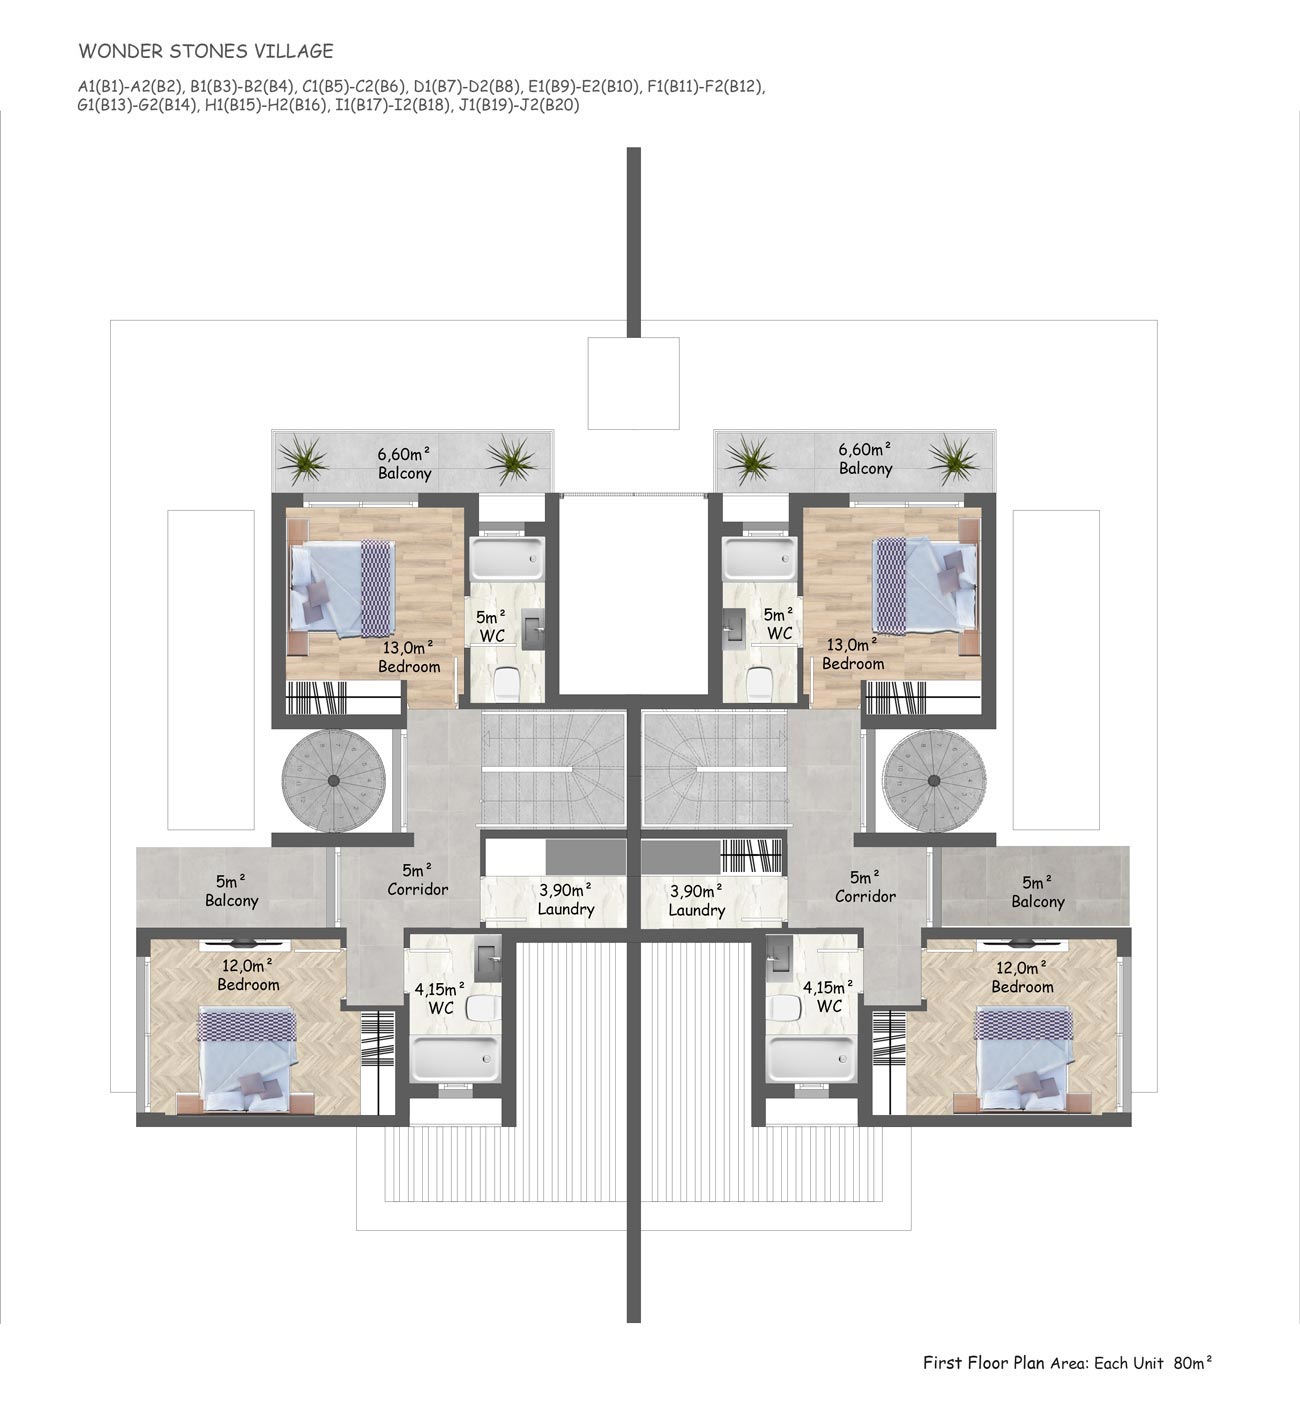 Floor Plan - First floor